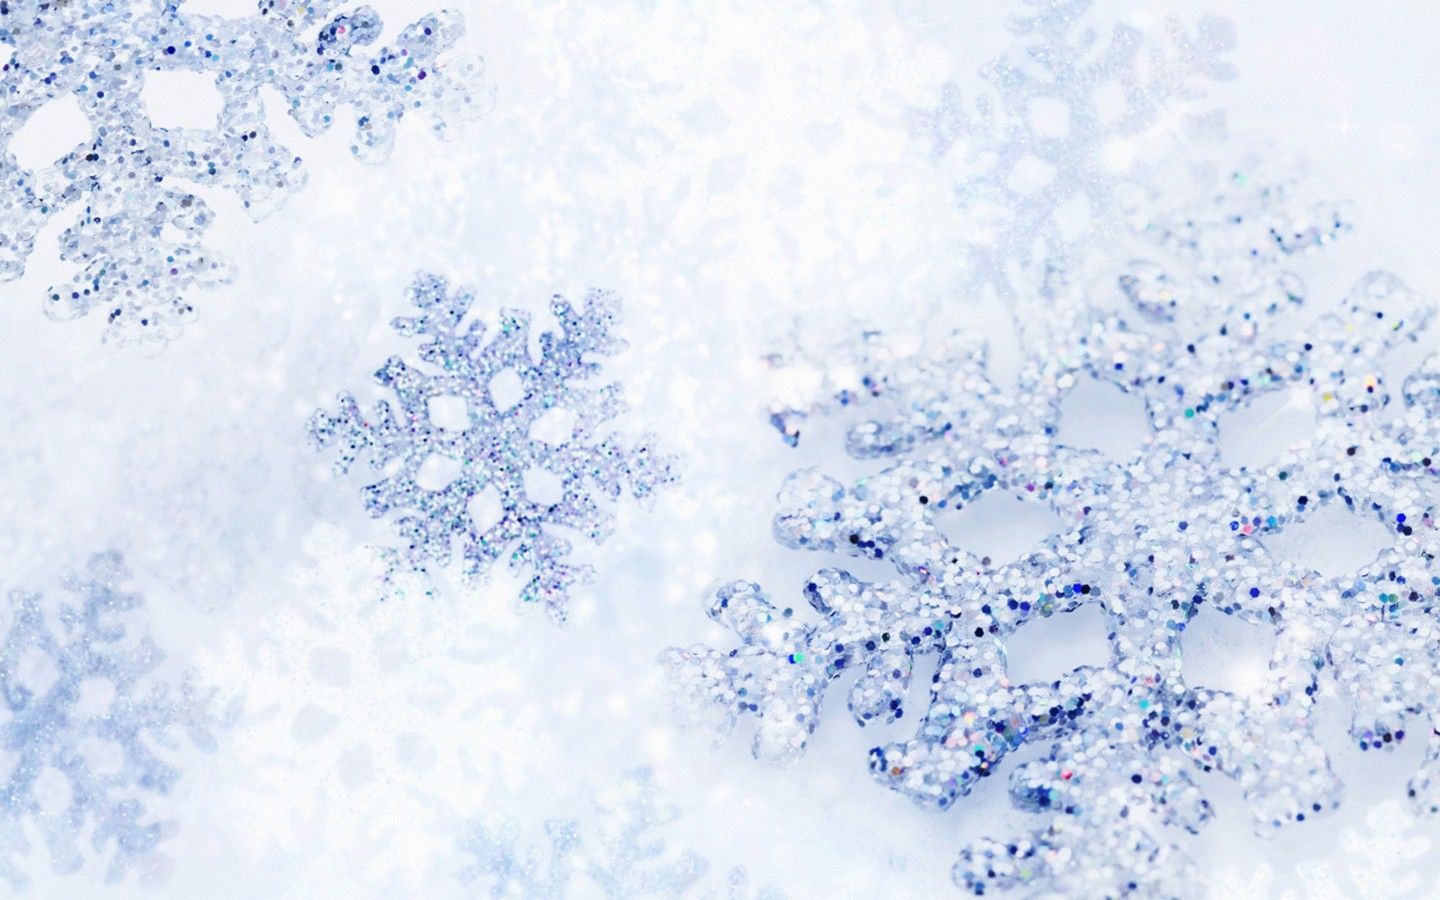 Snowflakes on a white background - White Christmas